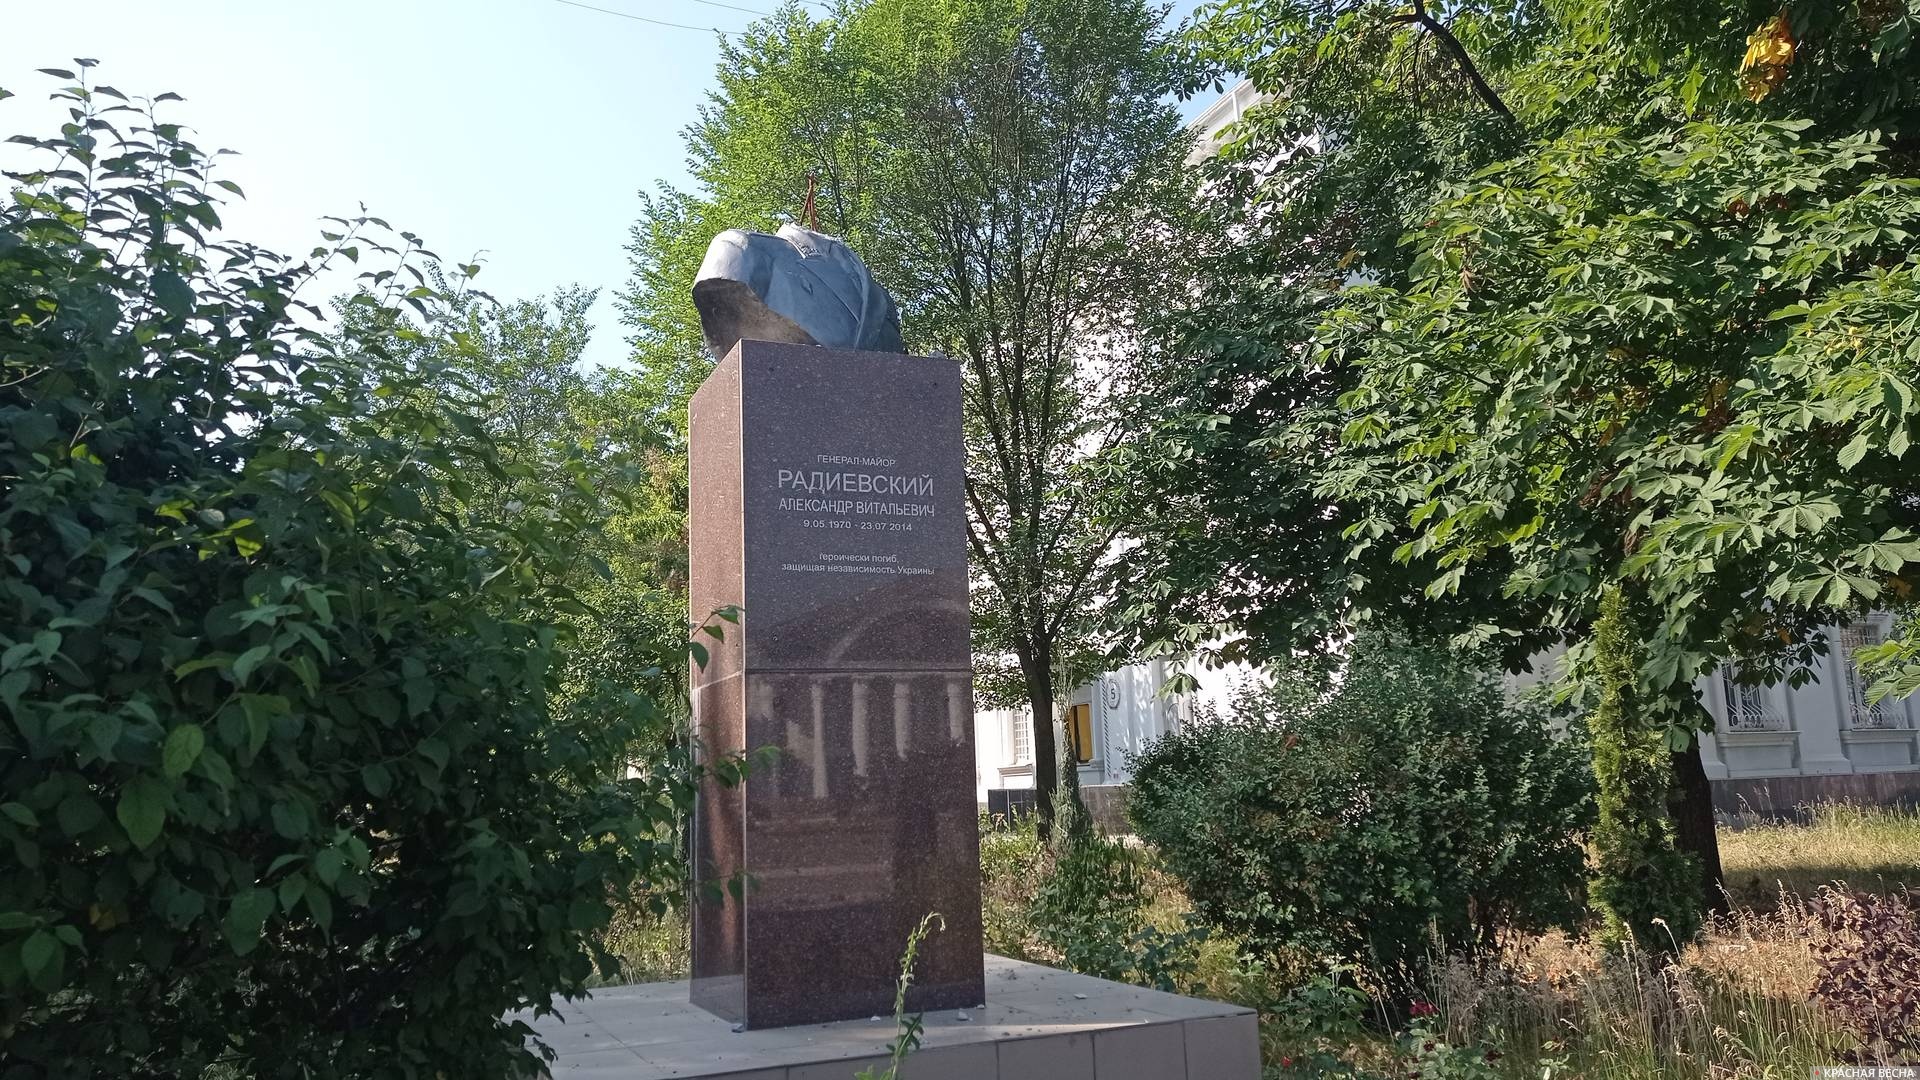 Обезглавленный памятник неонацистскому оккупанту в Северодонецке